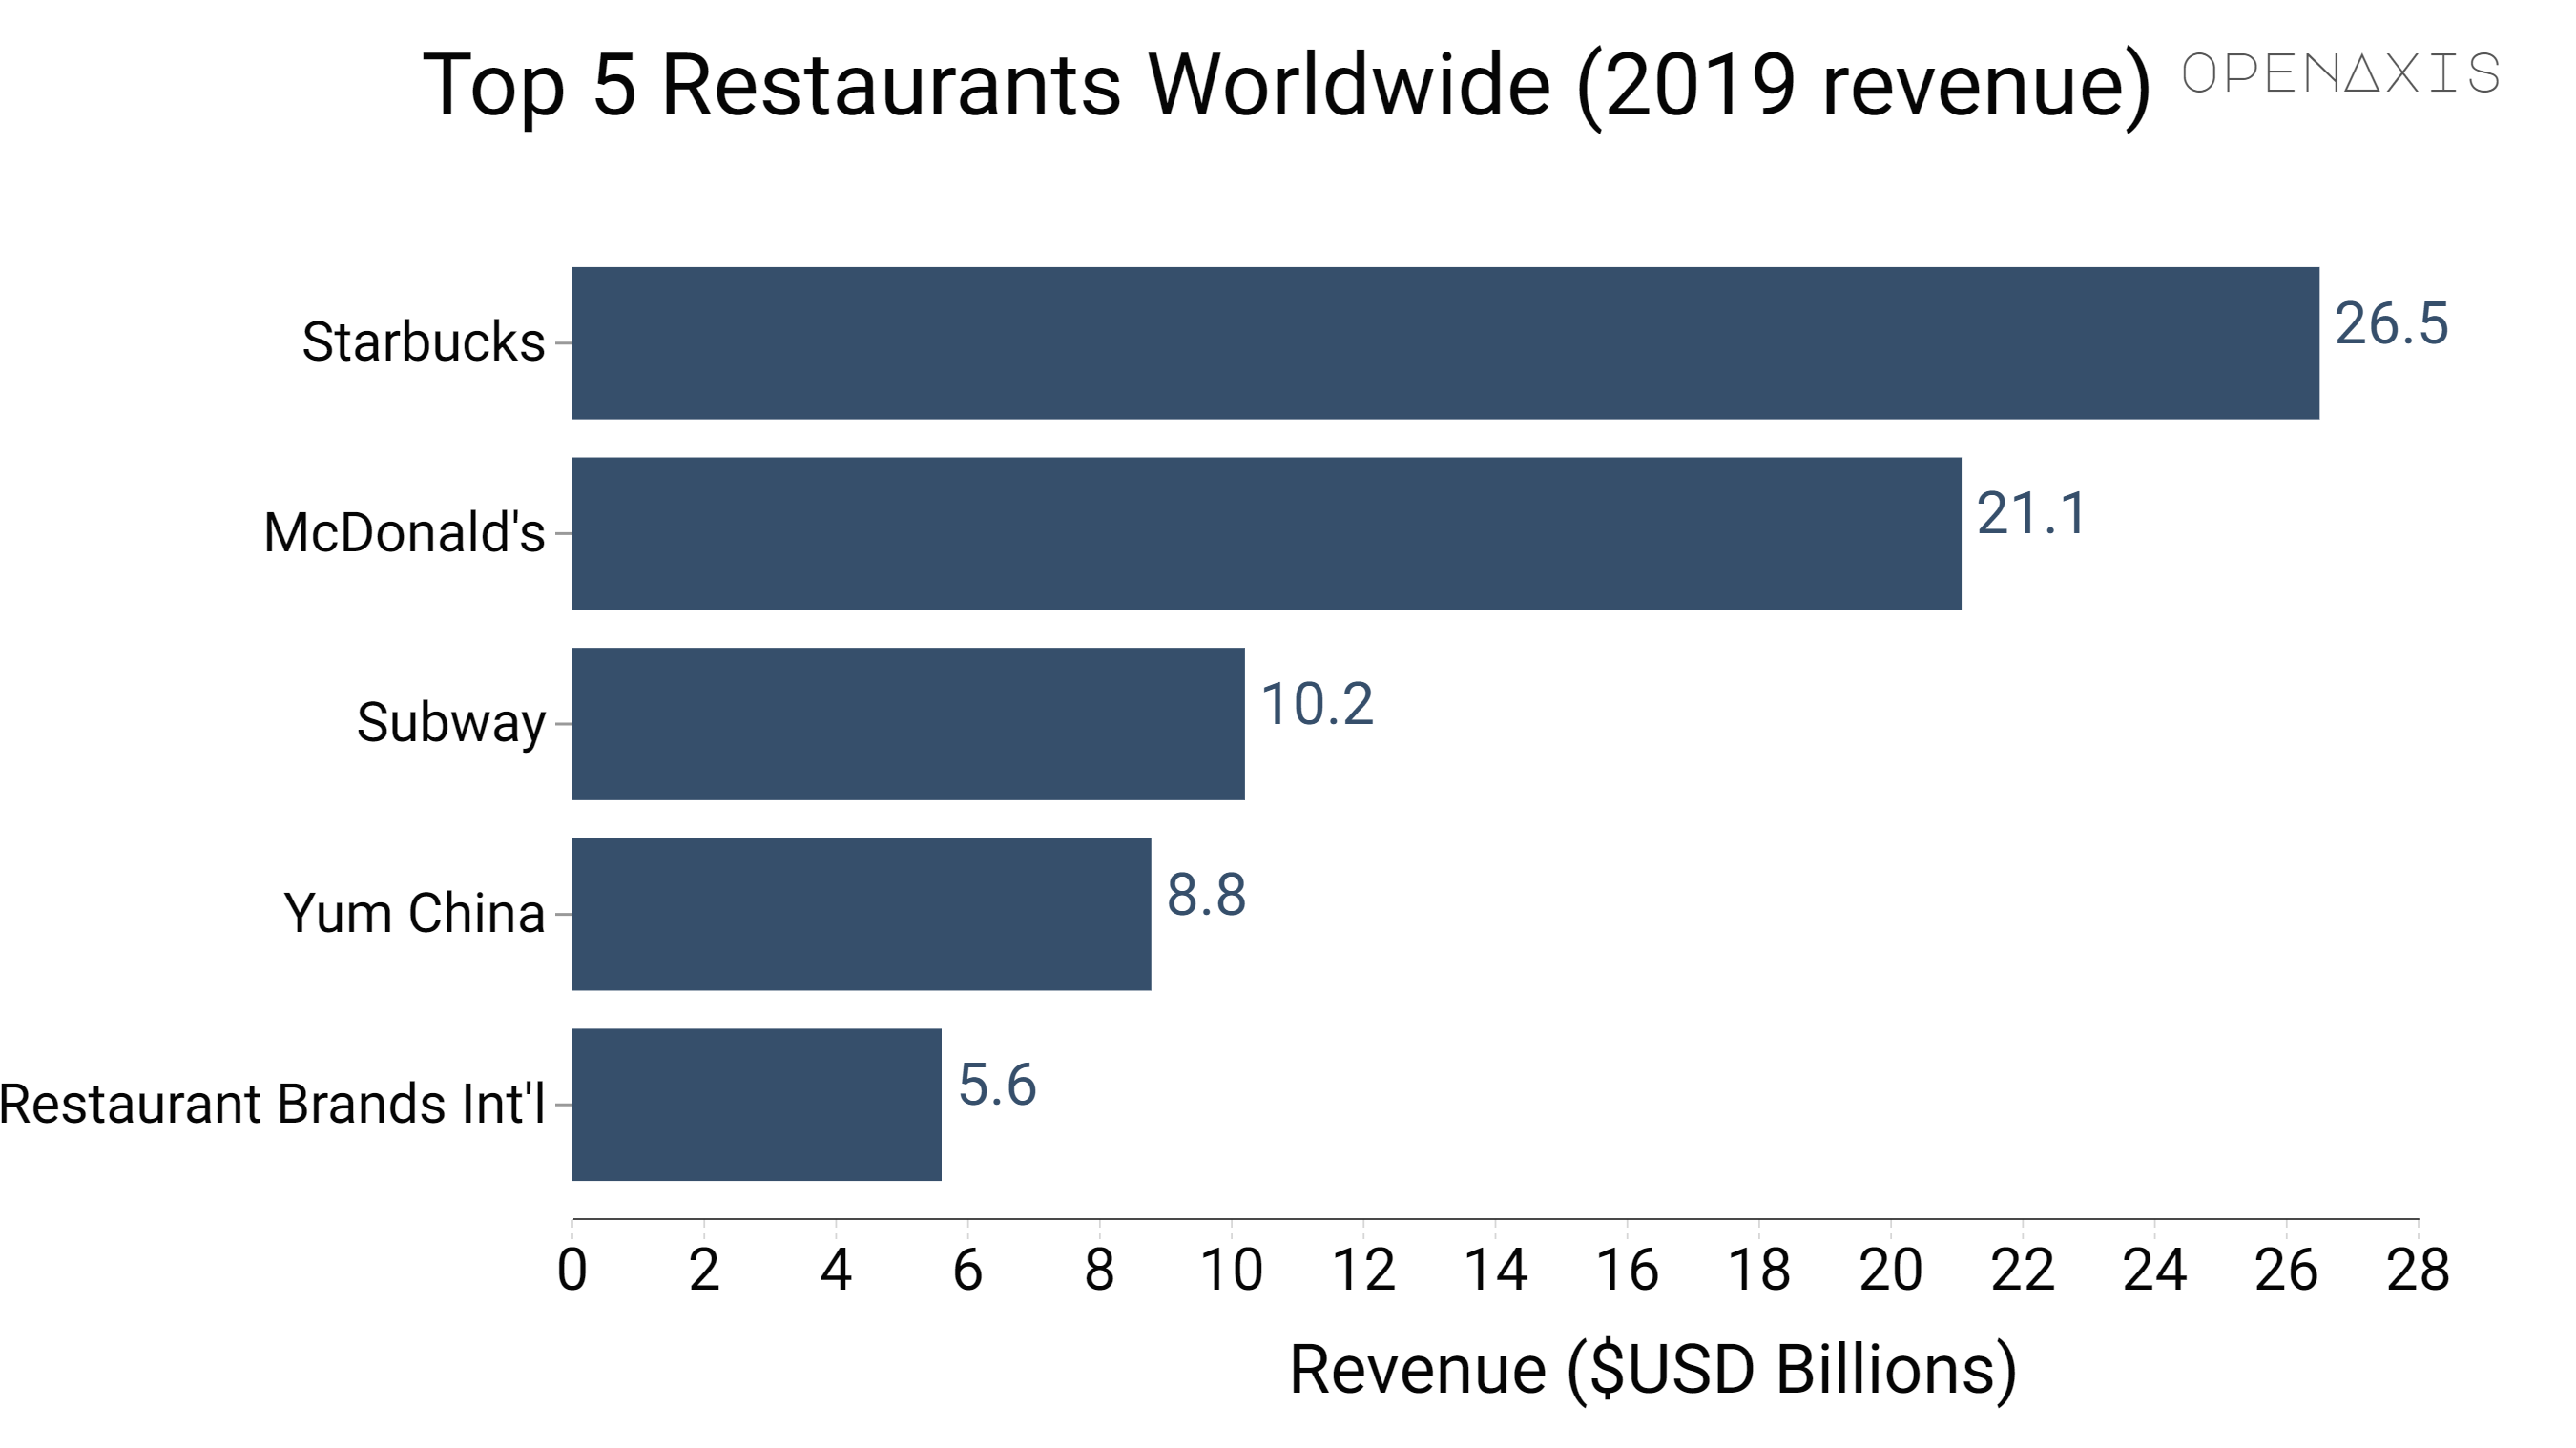 "Top 5 Restaurants Worldwide (2019 revenue)"